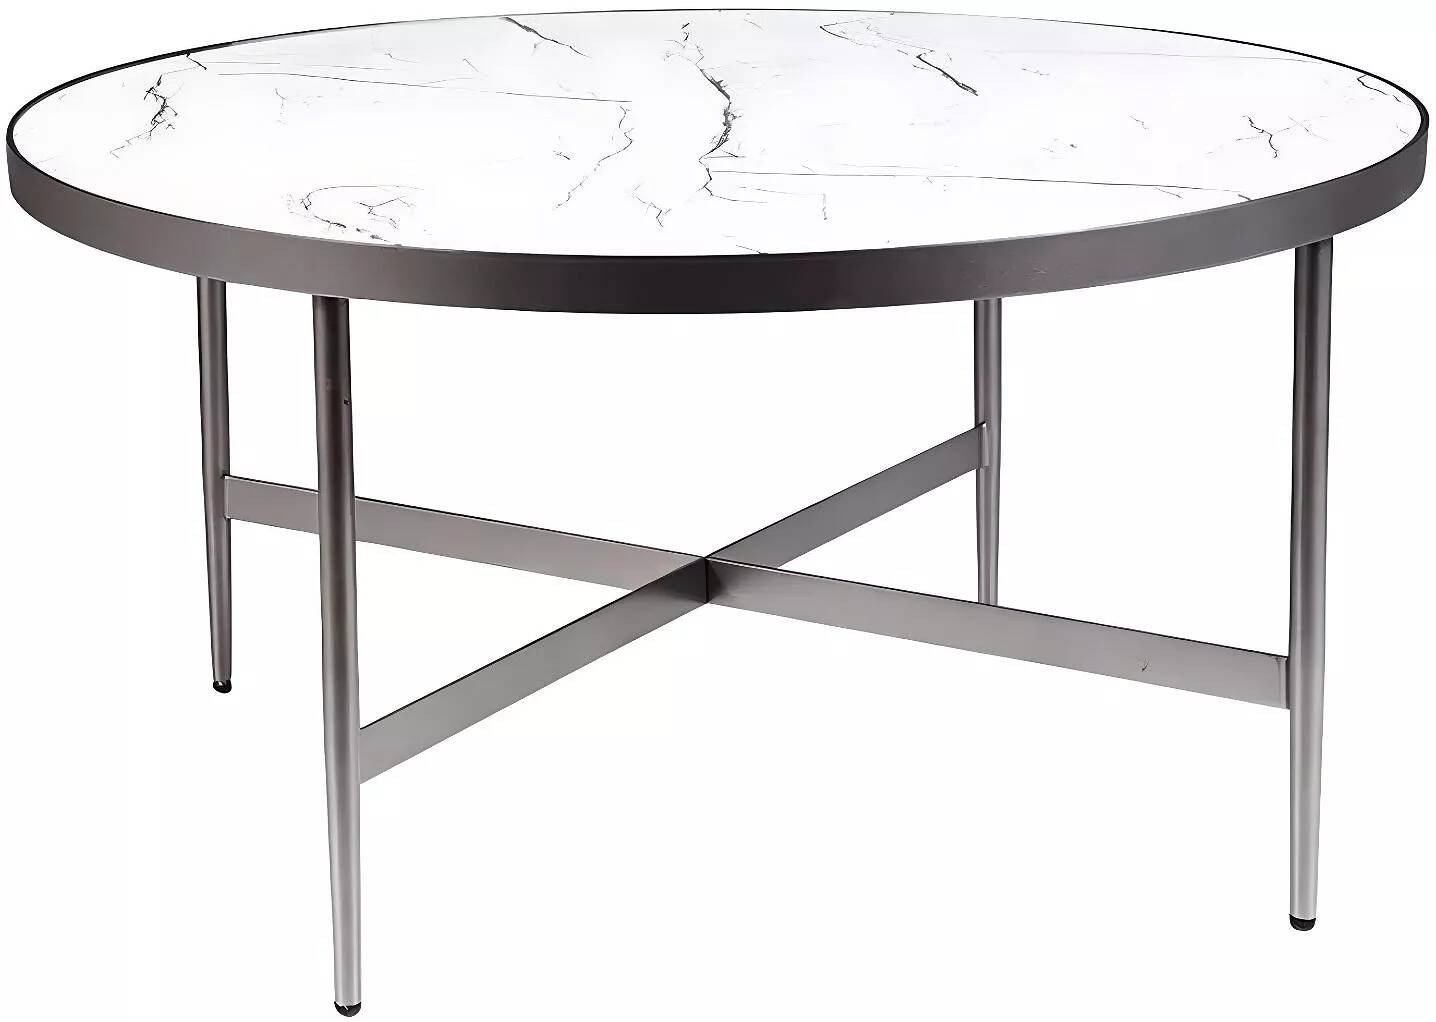 Table basse design aspect marbre blanc et métal gris